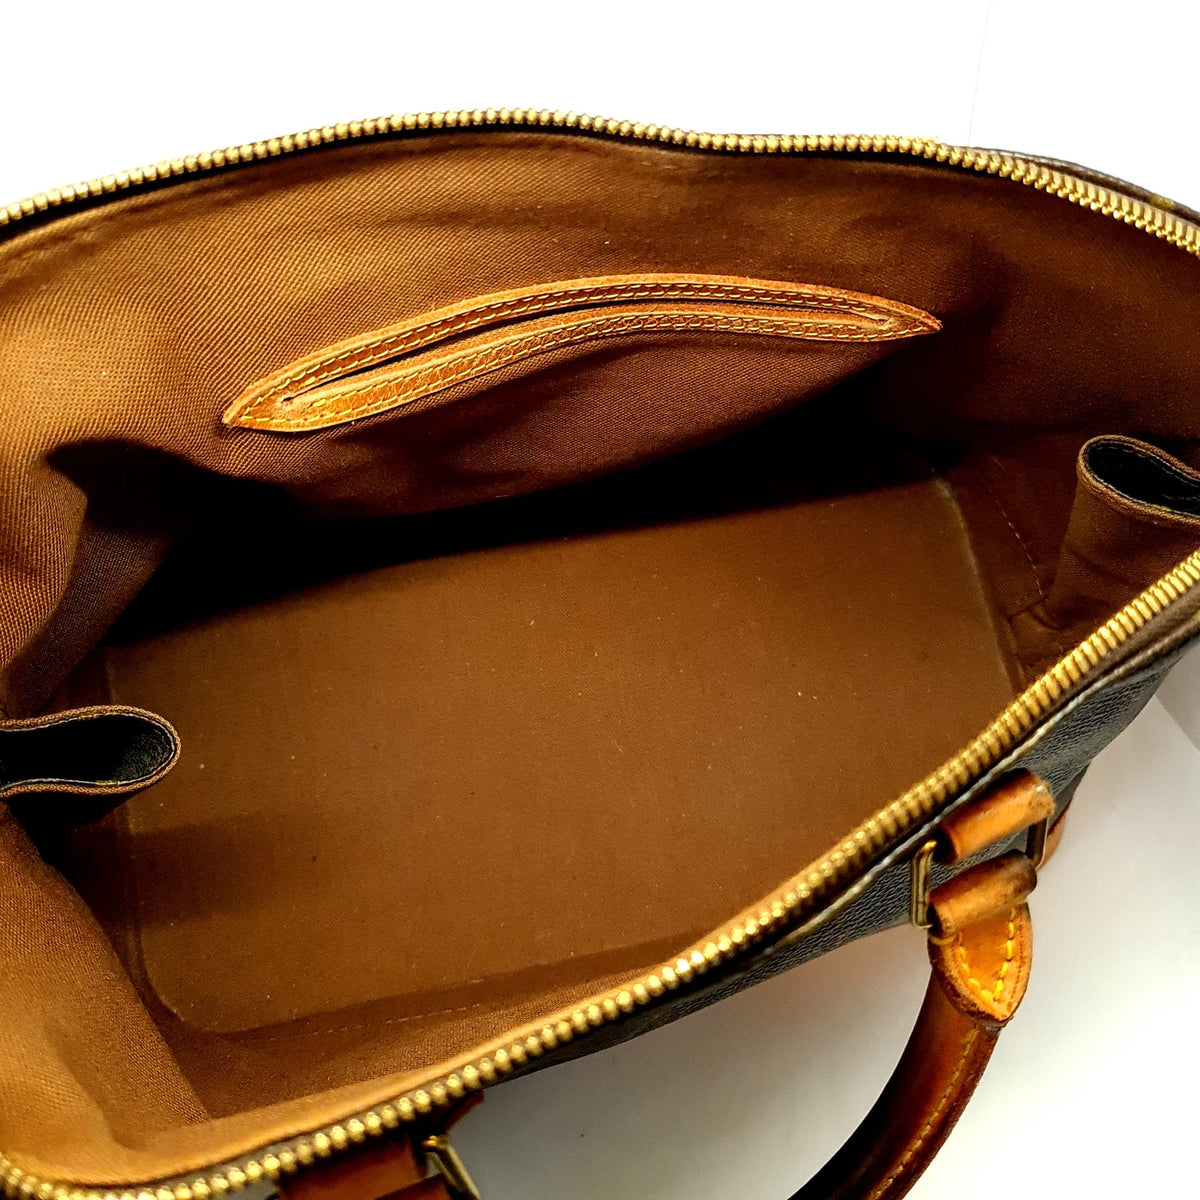 Sac à main Louis Vuitton Speedy 35 Vintage – Cash Converters Suisse